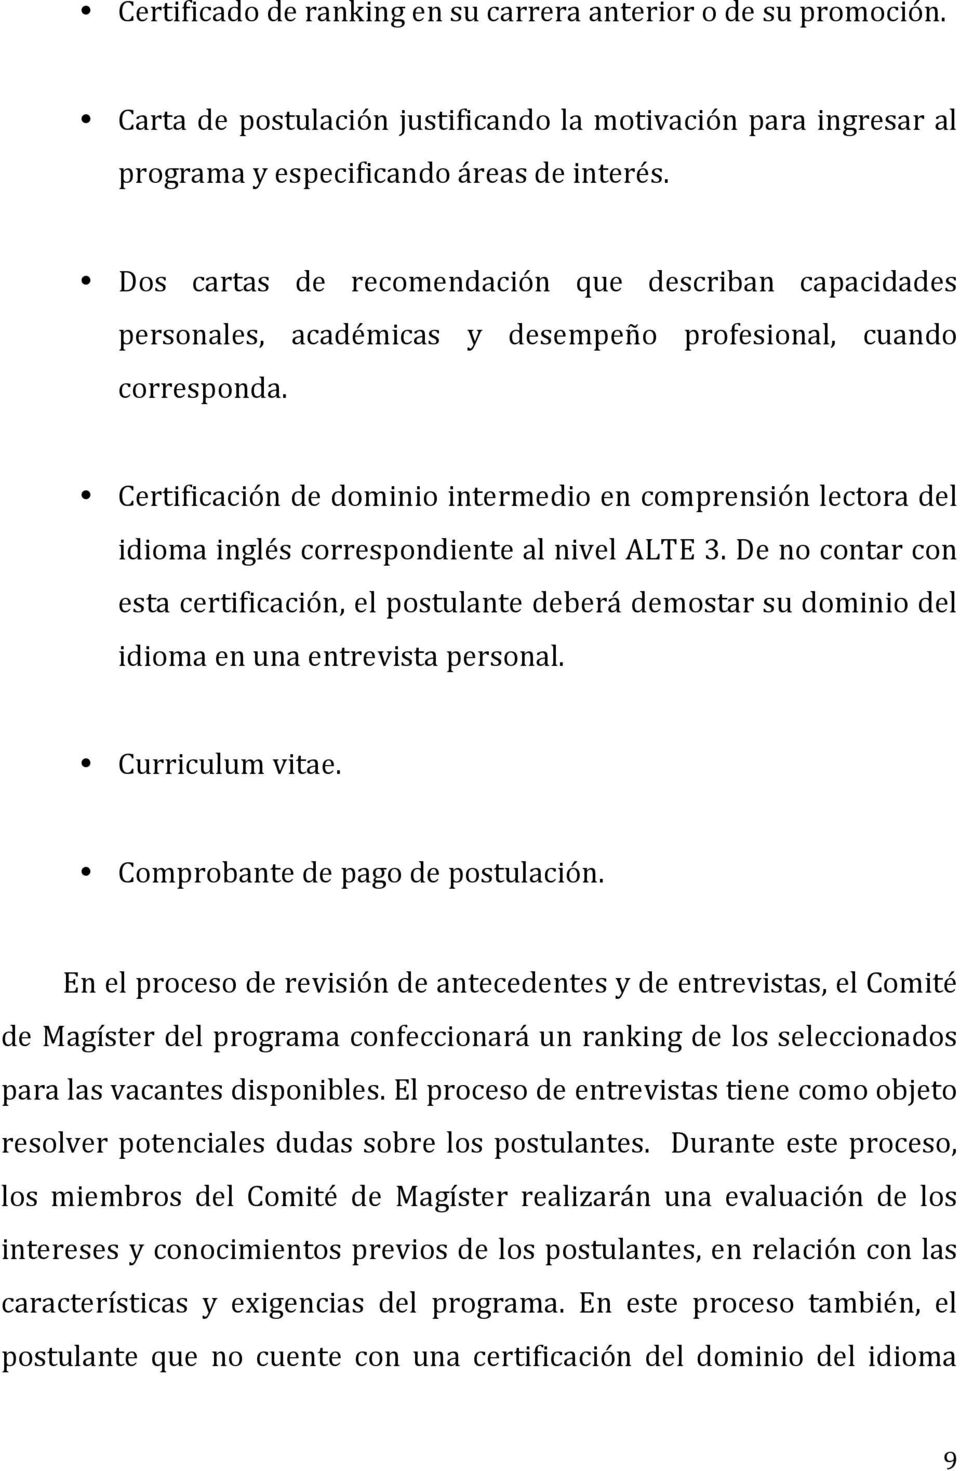 Certificación de dominio intermedio en comprensión lectora del idioma inglés correspondiente al nivel ALTE 3.